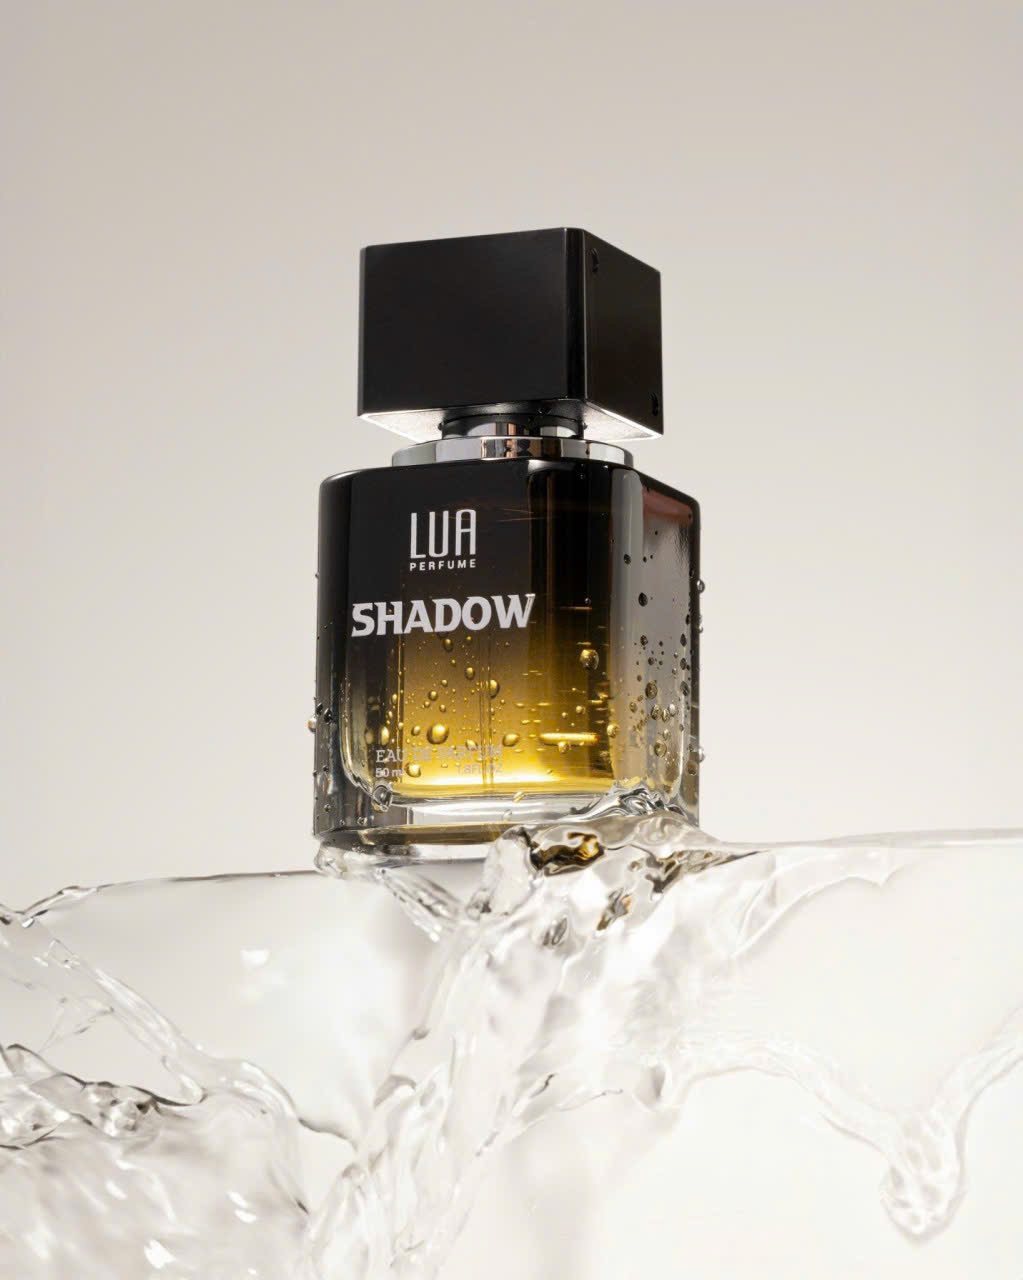 Shadow là hương thơm độc nhất vô nhị mang đến cho chủ nhân mình sự quyến rũ sang trọng đầy bí ẩn và cuốn hút.